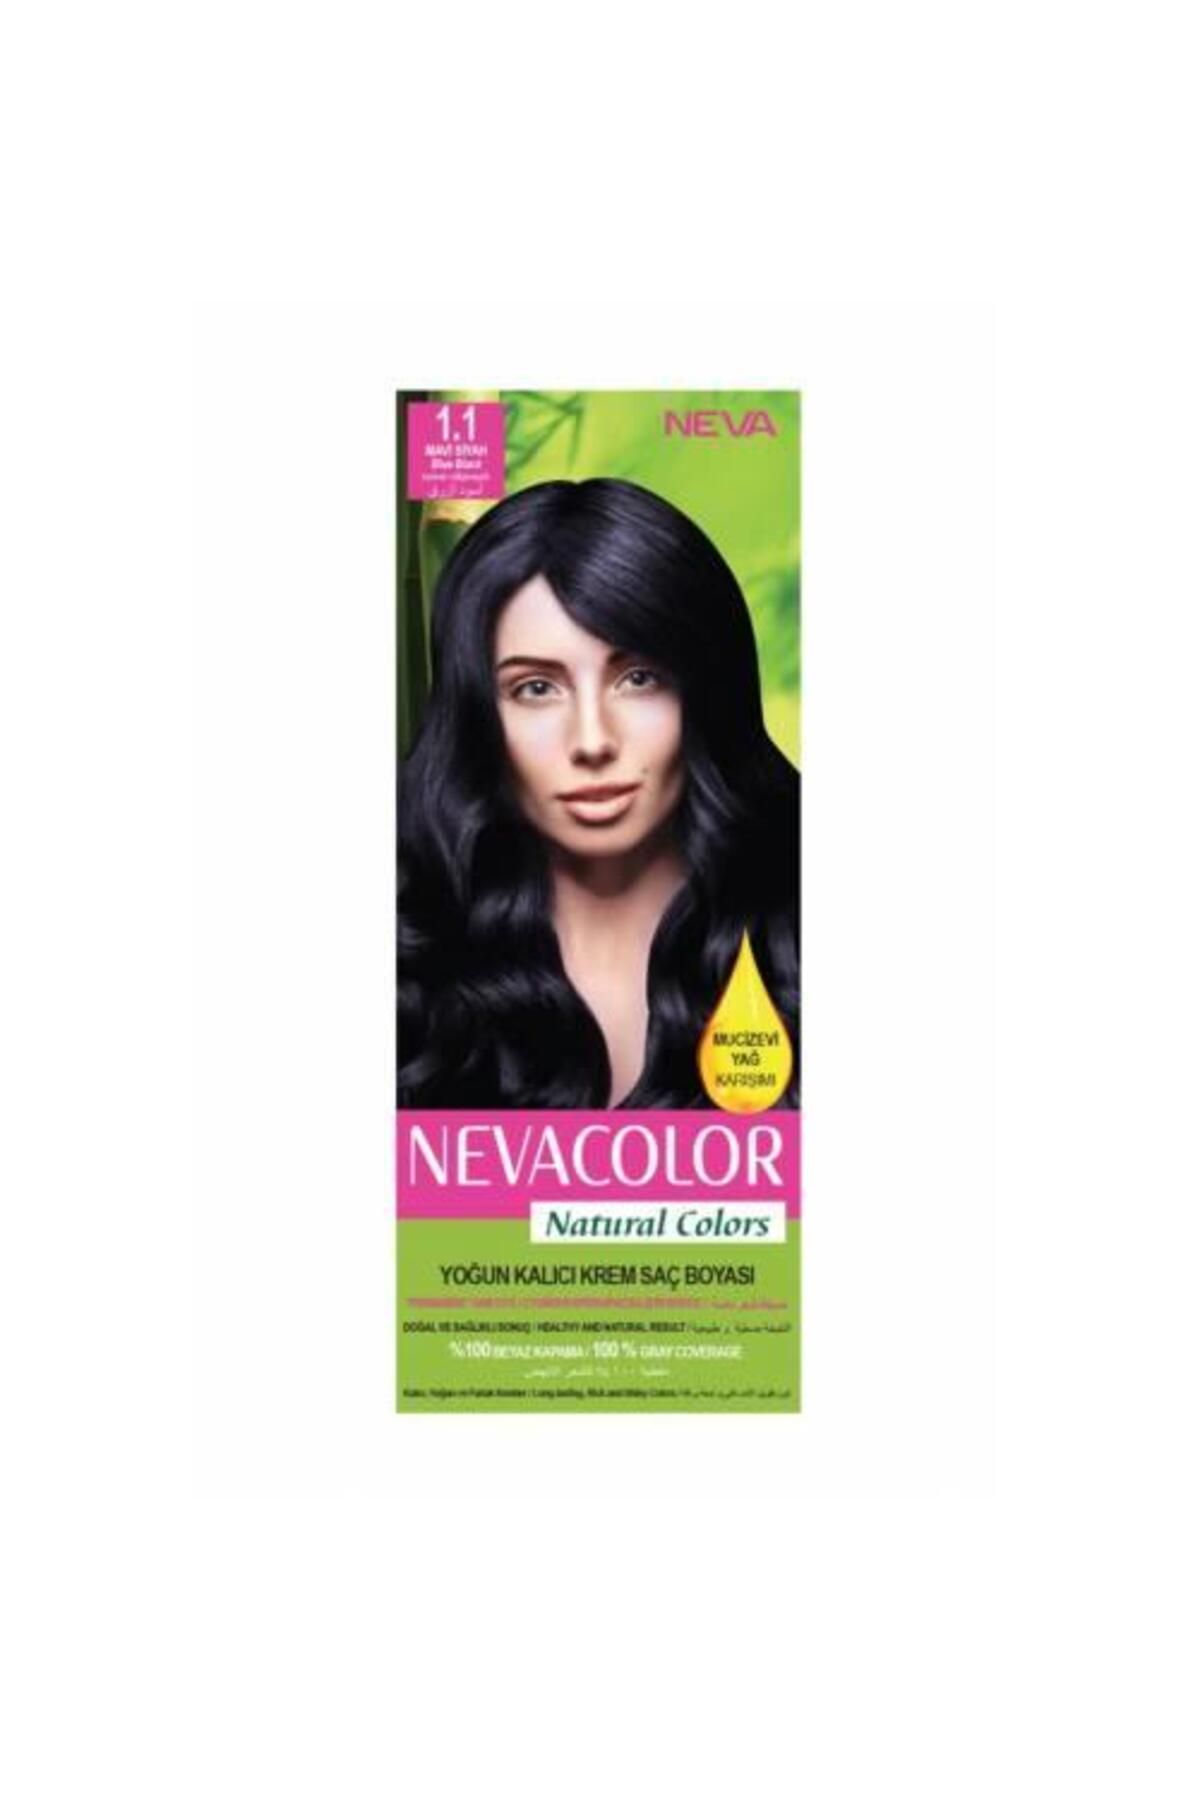 Neva Color Nevacolor Natural Colors 1.1 Mavi Siyah - Kalıcı Krem Saç Boyası Seti